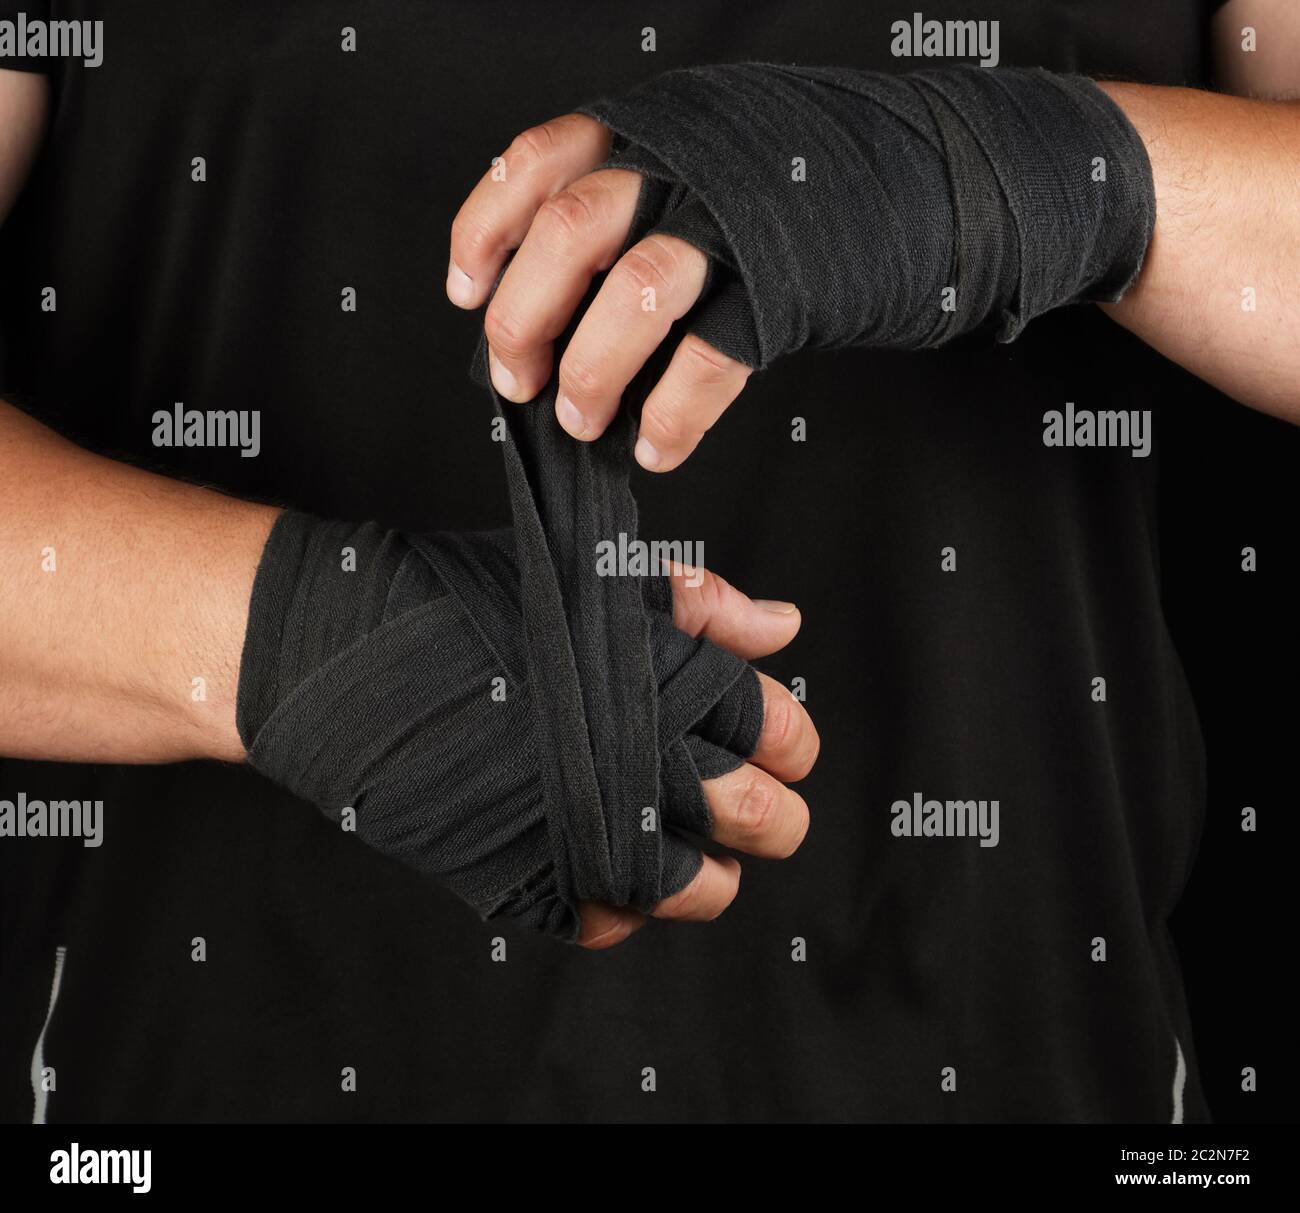 les athlètes adultes se tiennent dans des vêtements noirs et enveloppent ses mains dans un bandage élastique en textile noir avant l'entraînement, le fond noir, le corps musculaire Banque D'Images